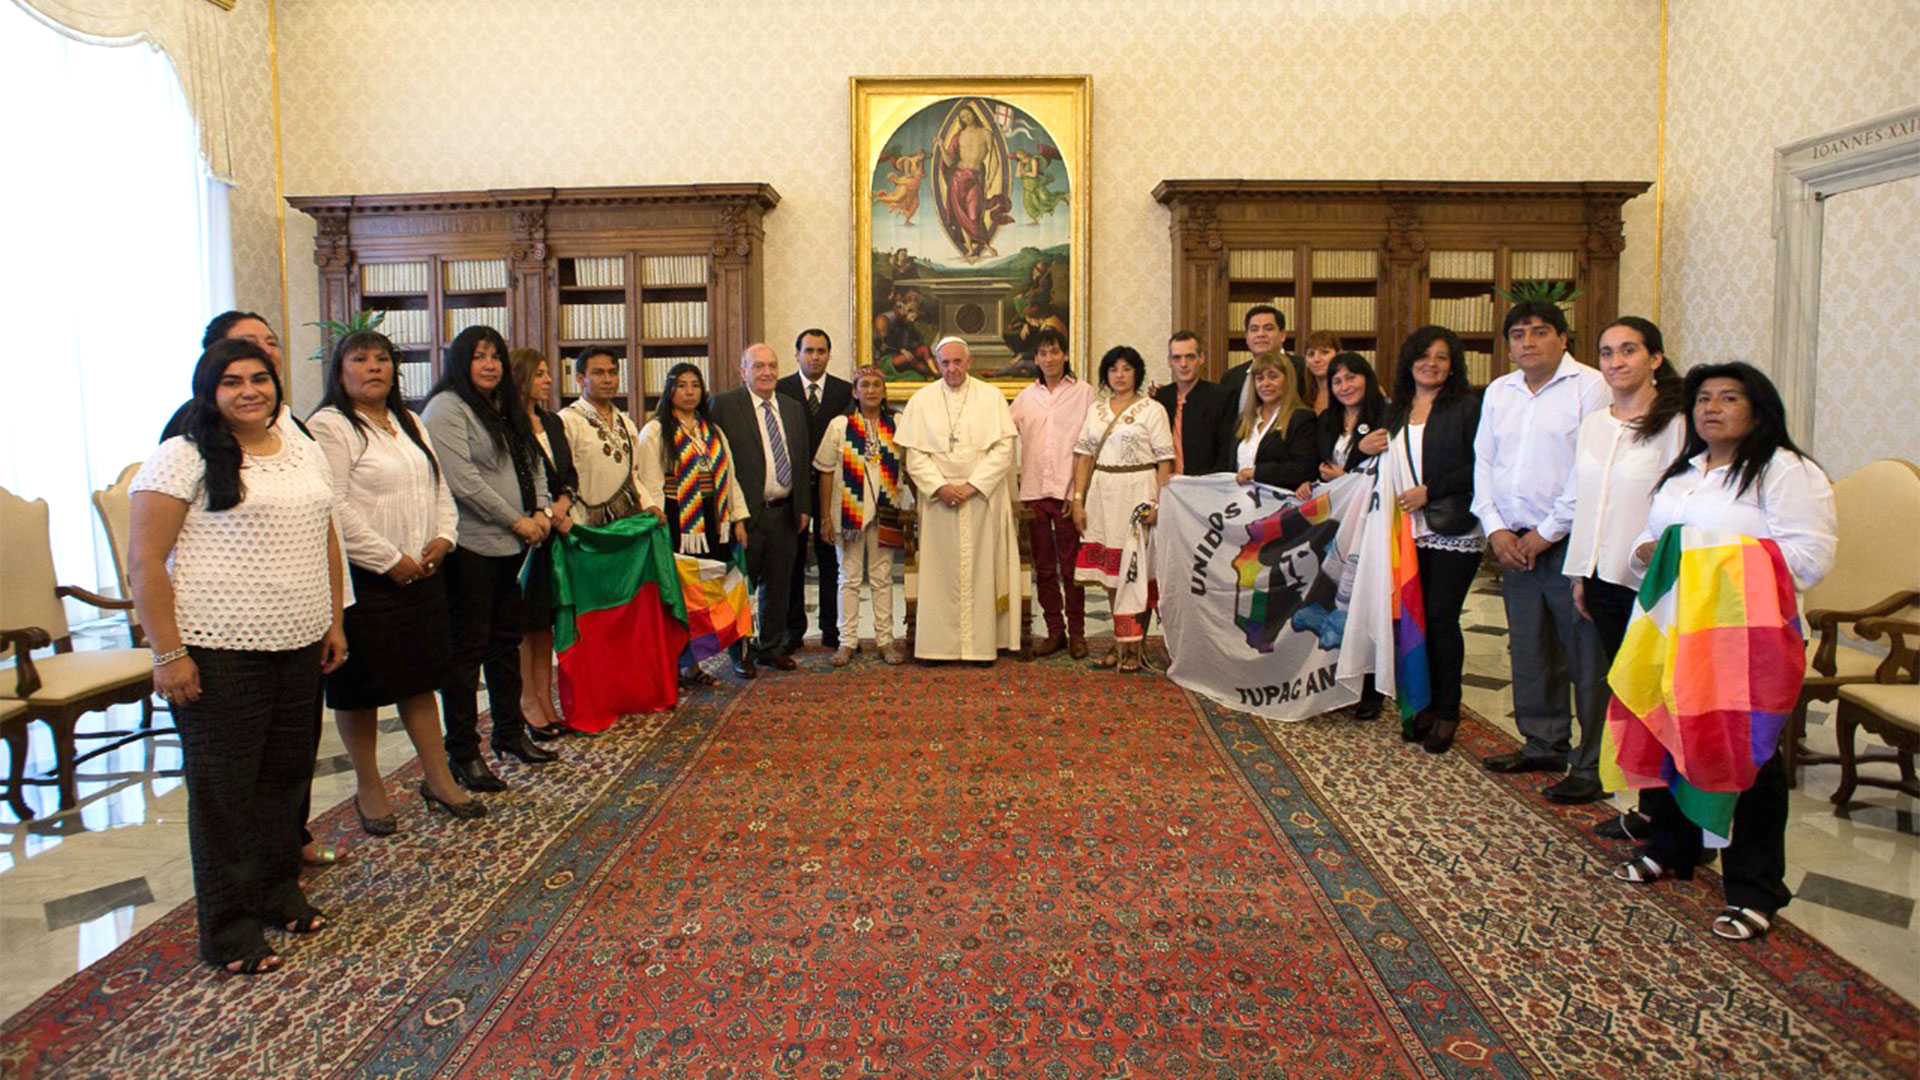 El papa Francisco junto a Milagro Sala y una delegación de miembros de la Tupac Amaru en el Vaticano (foto de archivo)